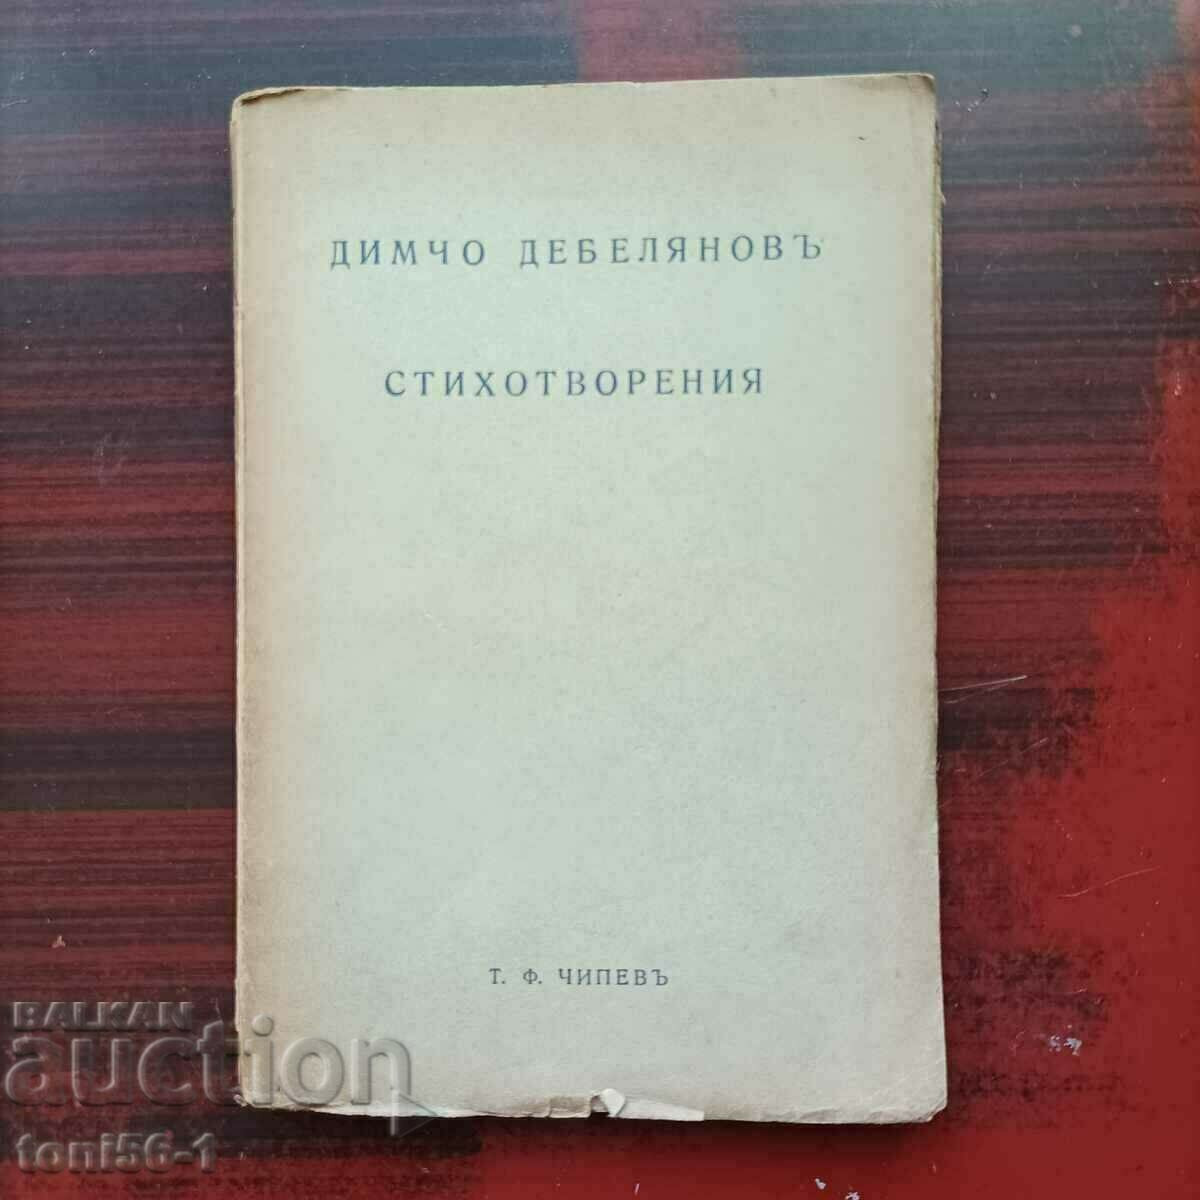 Dimcho Debelyanov - "Poems" 1939